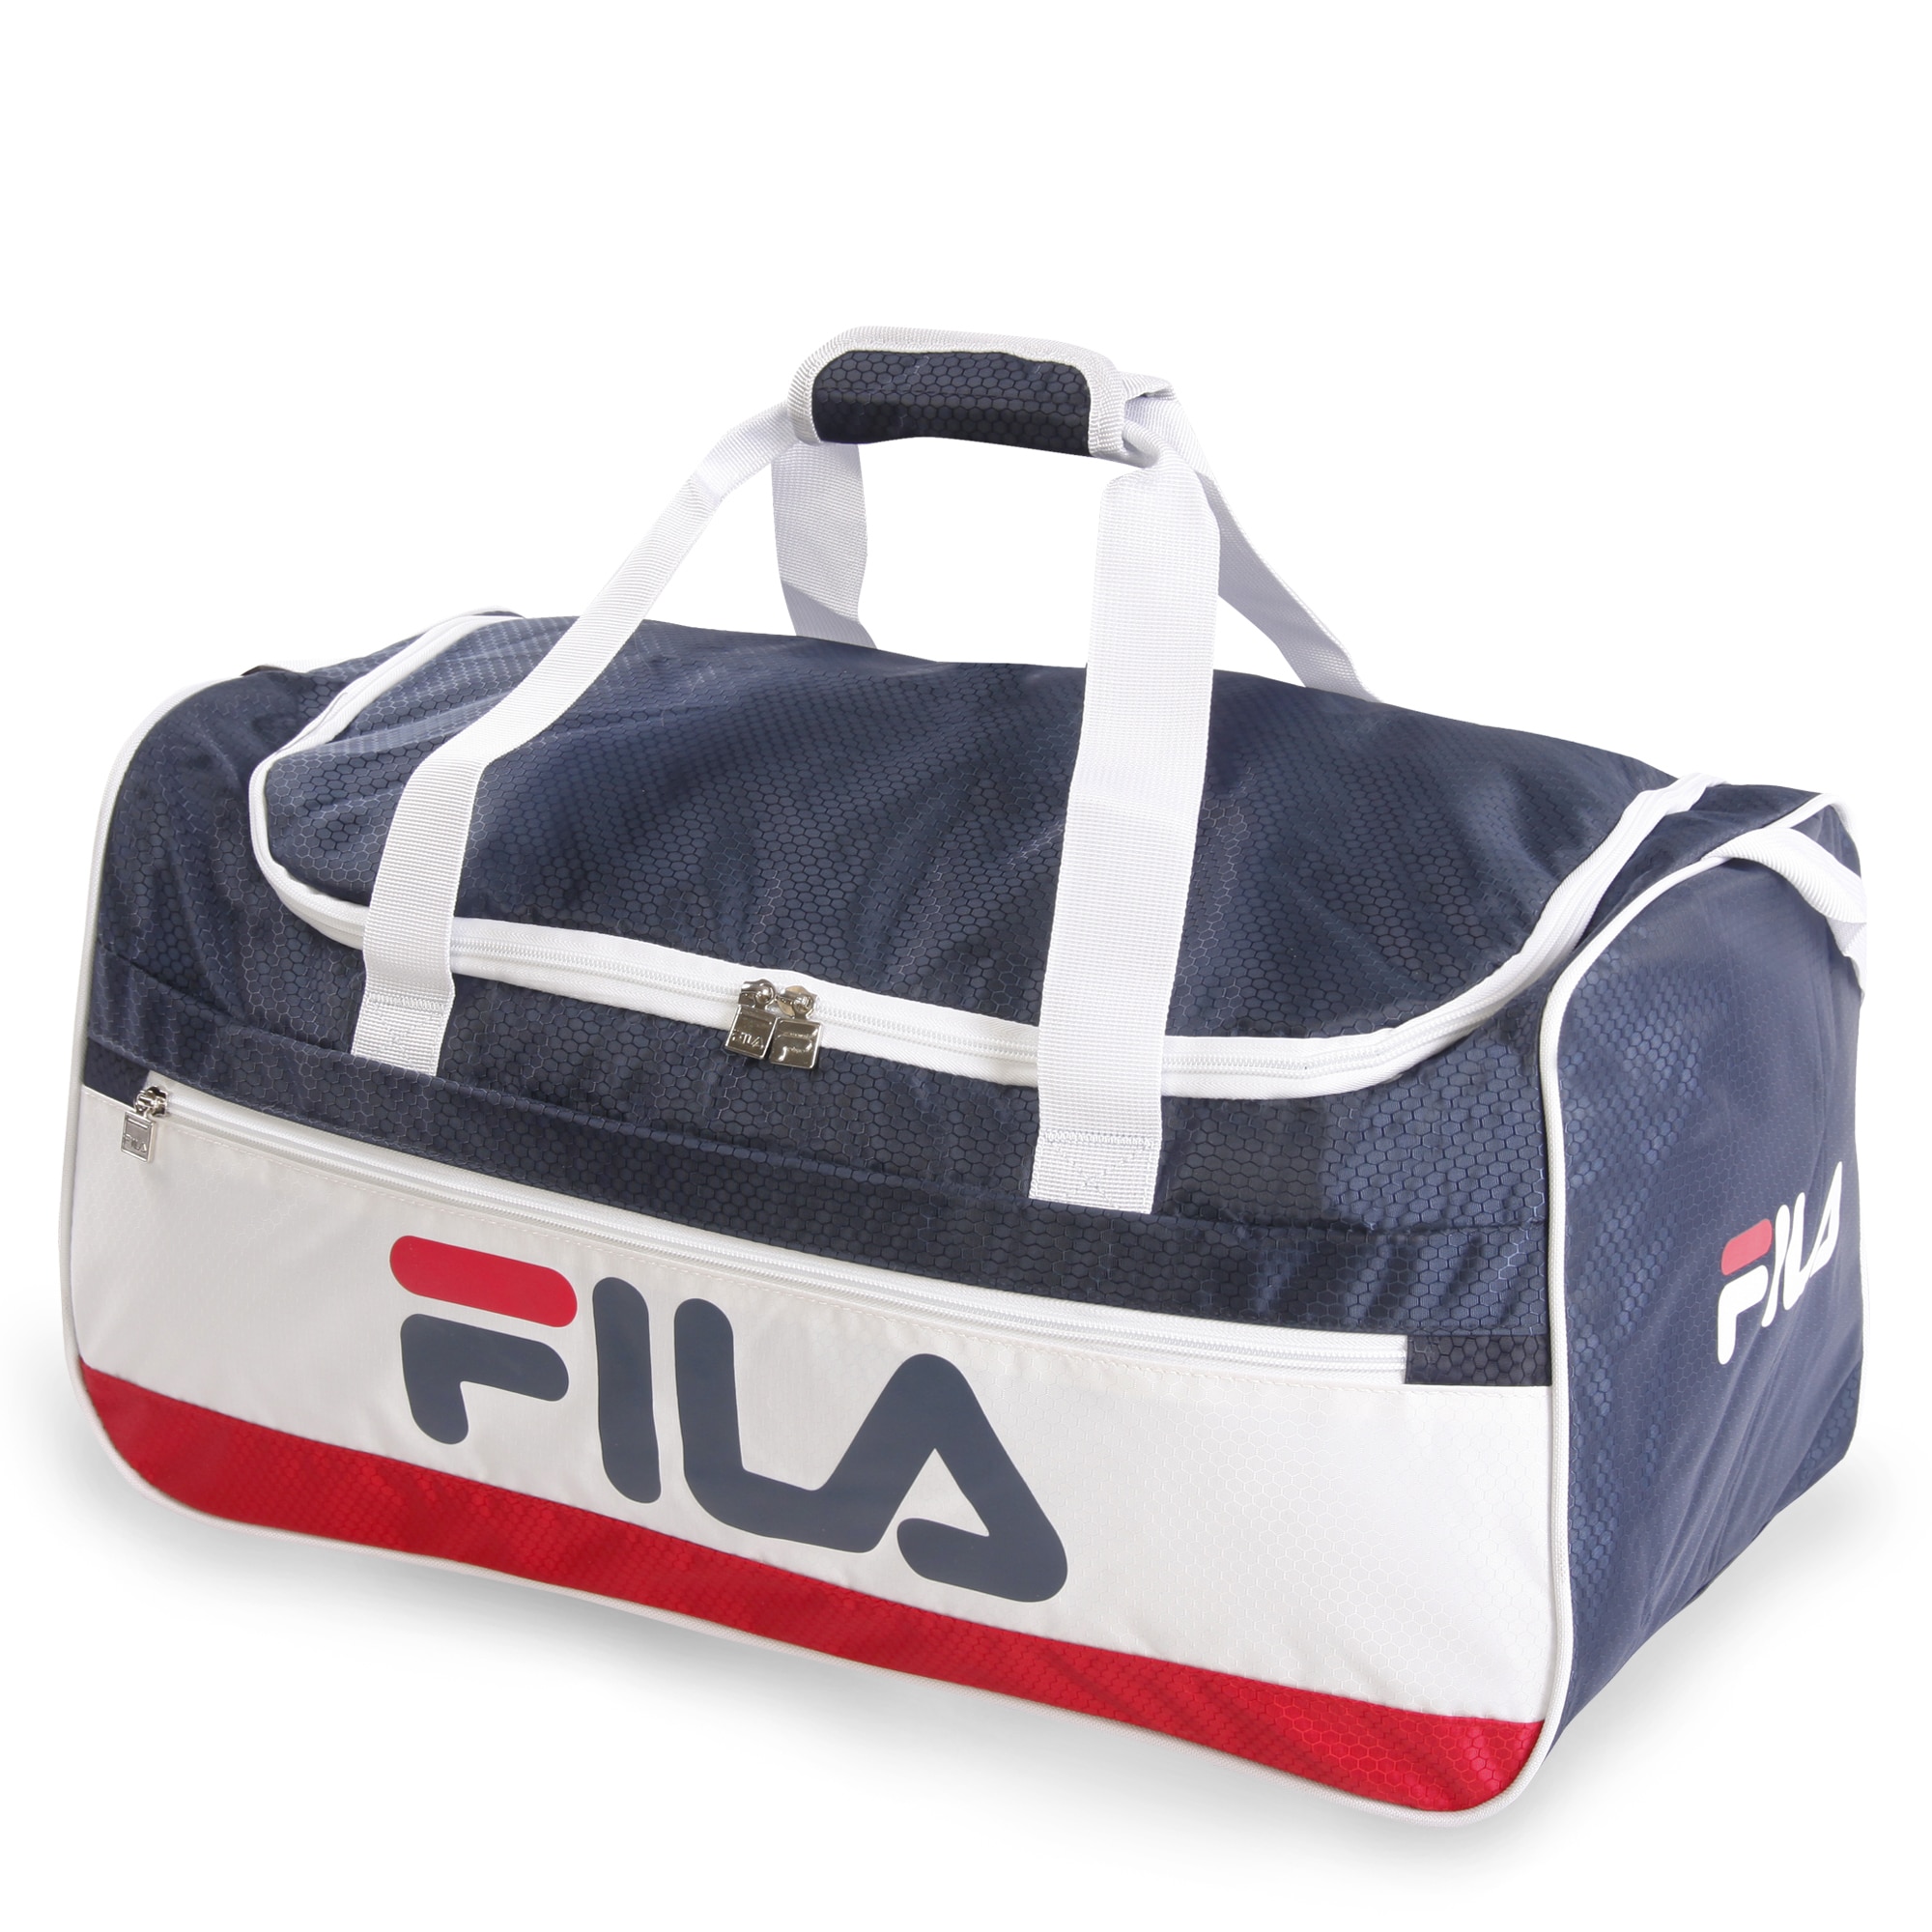 fila travel bag